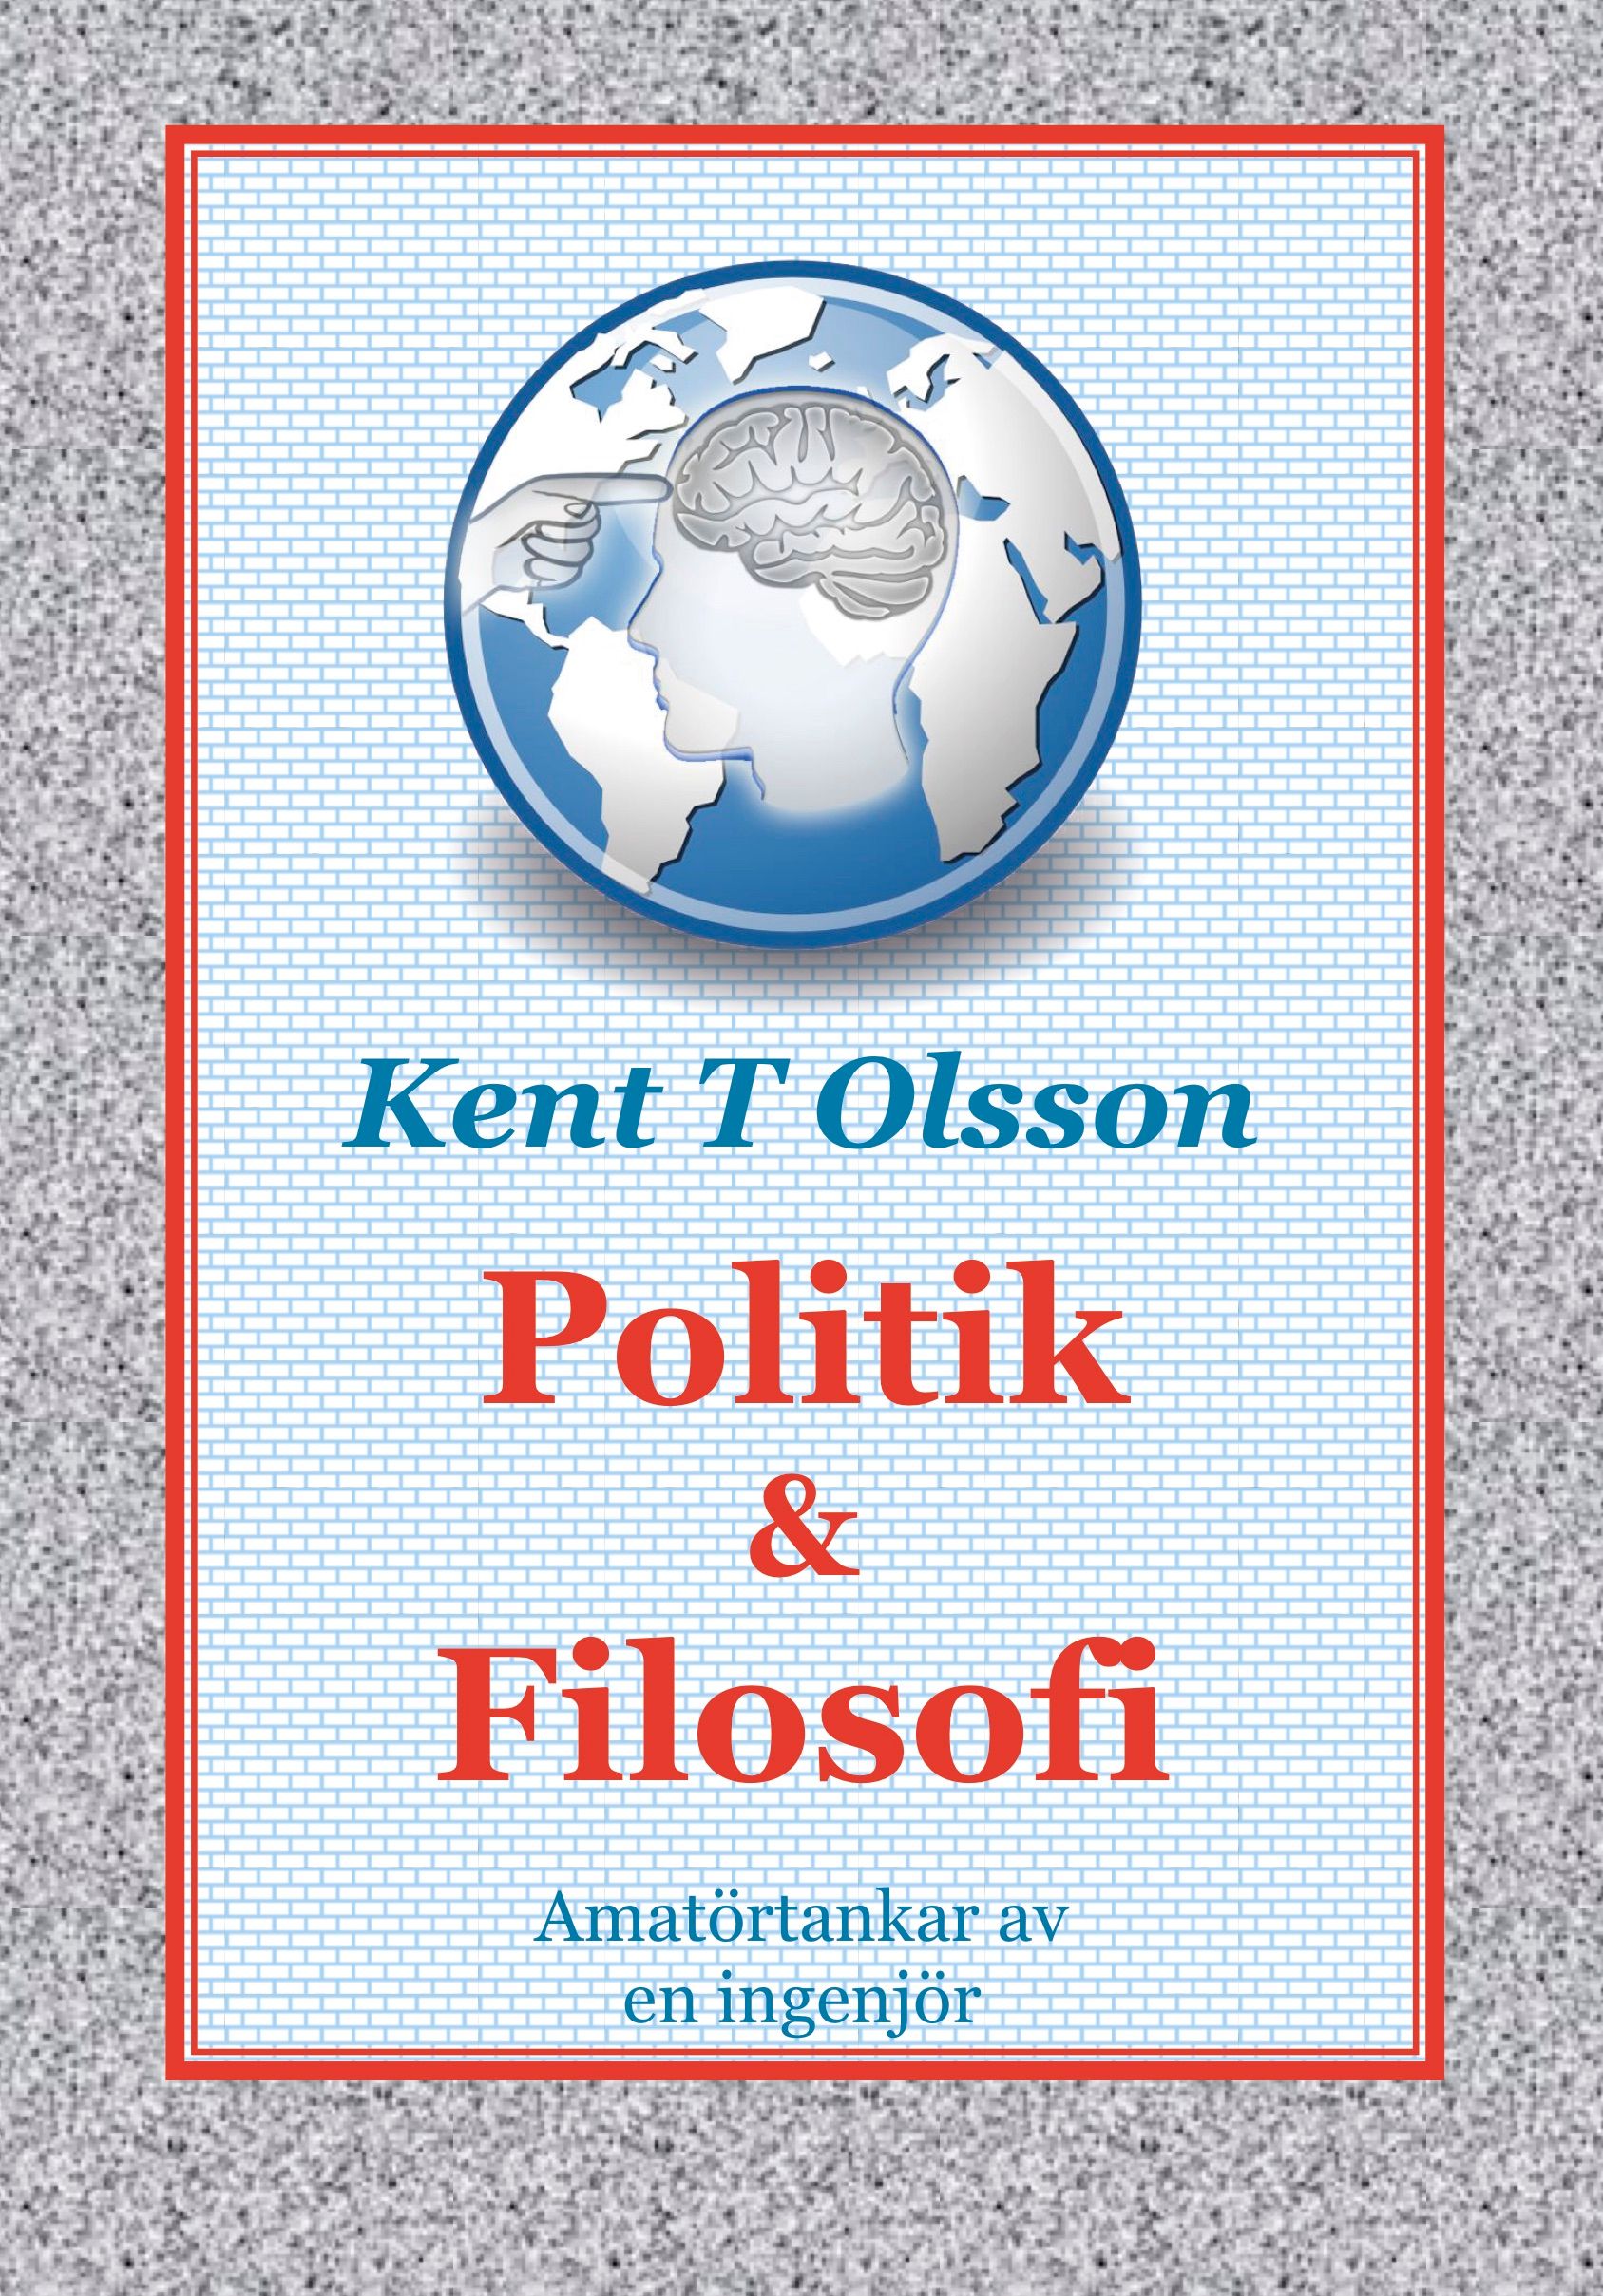 Politik & Filosofi, e-bok av Kent T Olsson